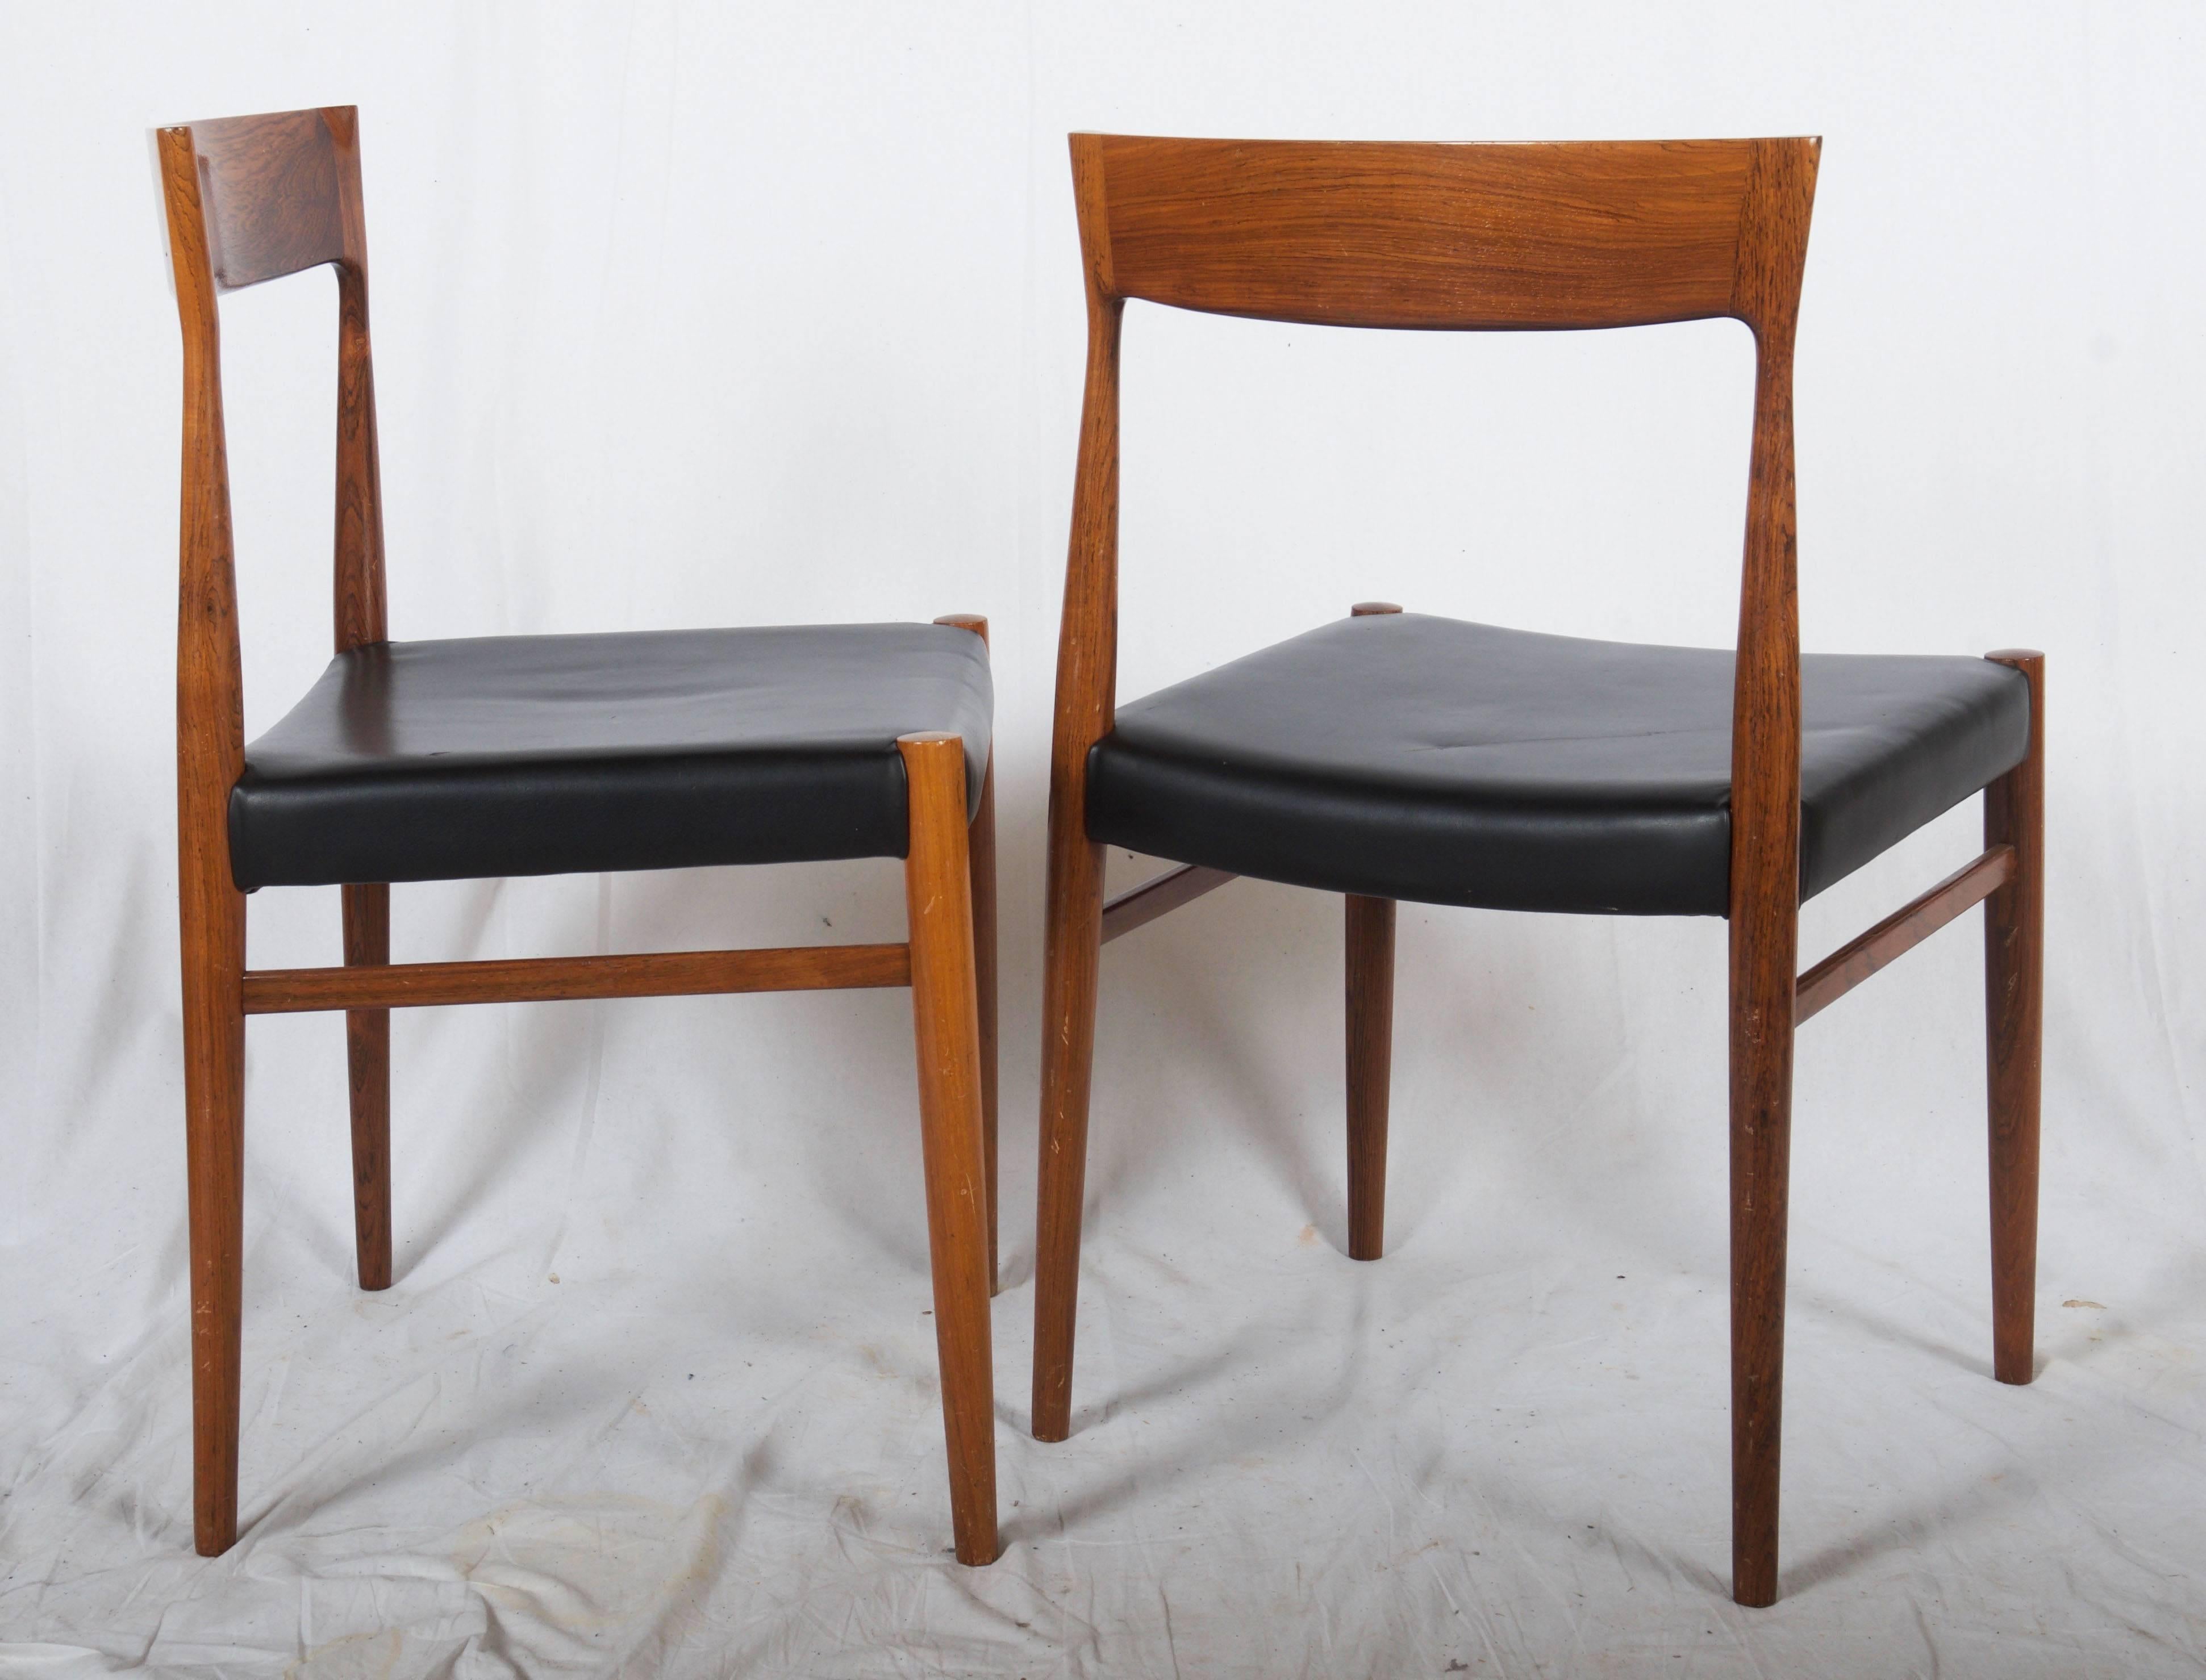 Gestell aus Hartholz, Sitz mit Kunstleder gepolstert, hergestellt in Dänemark in den 1960er Jahren. Die Konstruktion ist ähnlich wie bei den Stühlen des Modells 77 von Niels Otto Møller. Holz in ausgezeichnetem Zustand, eine neue Polsterung ist